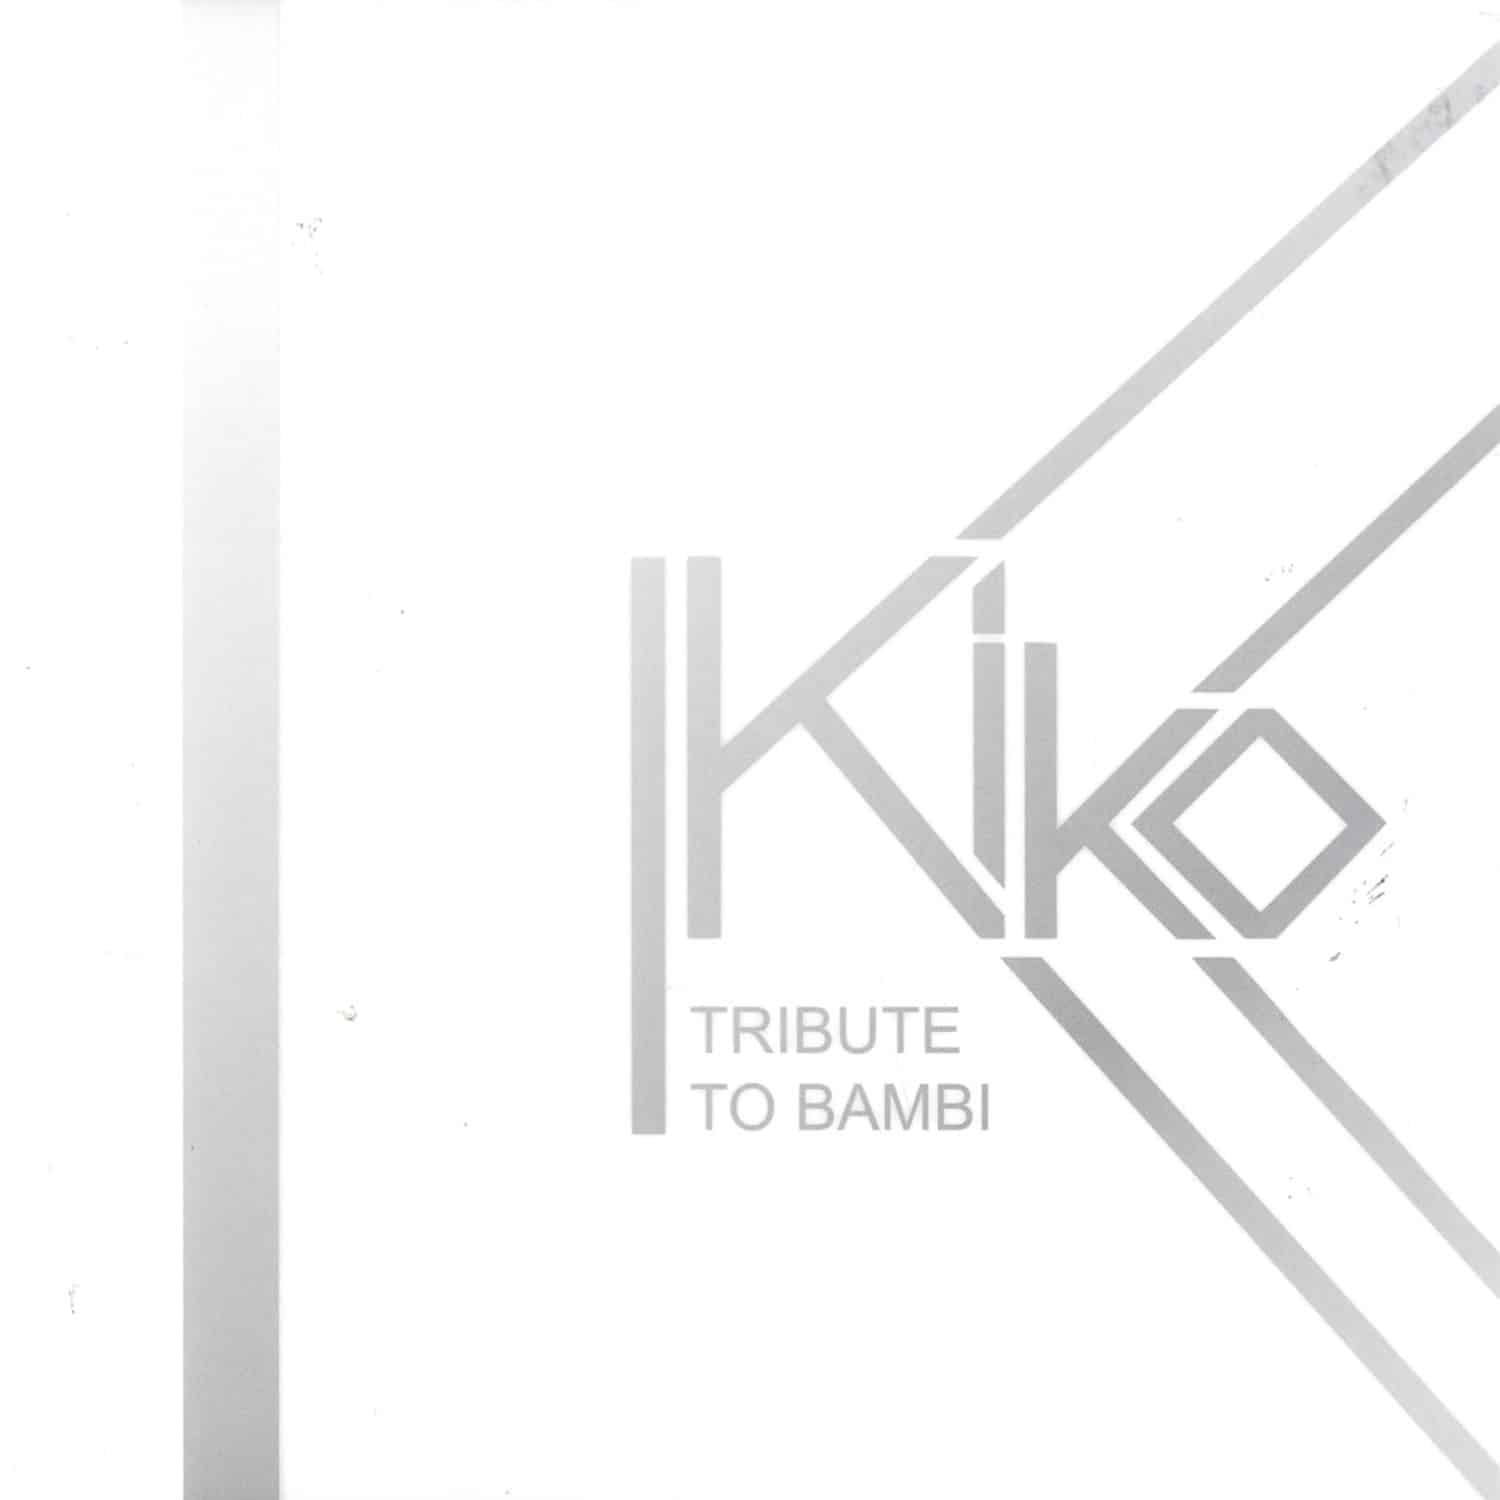 Kiko - TRIBUTE TO BAMBI